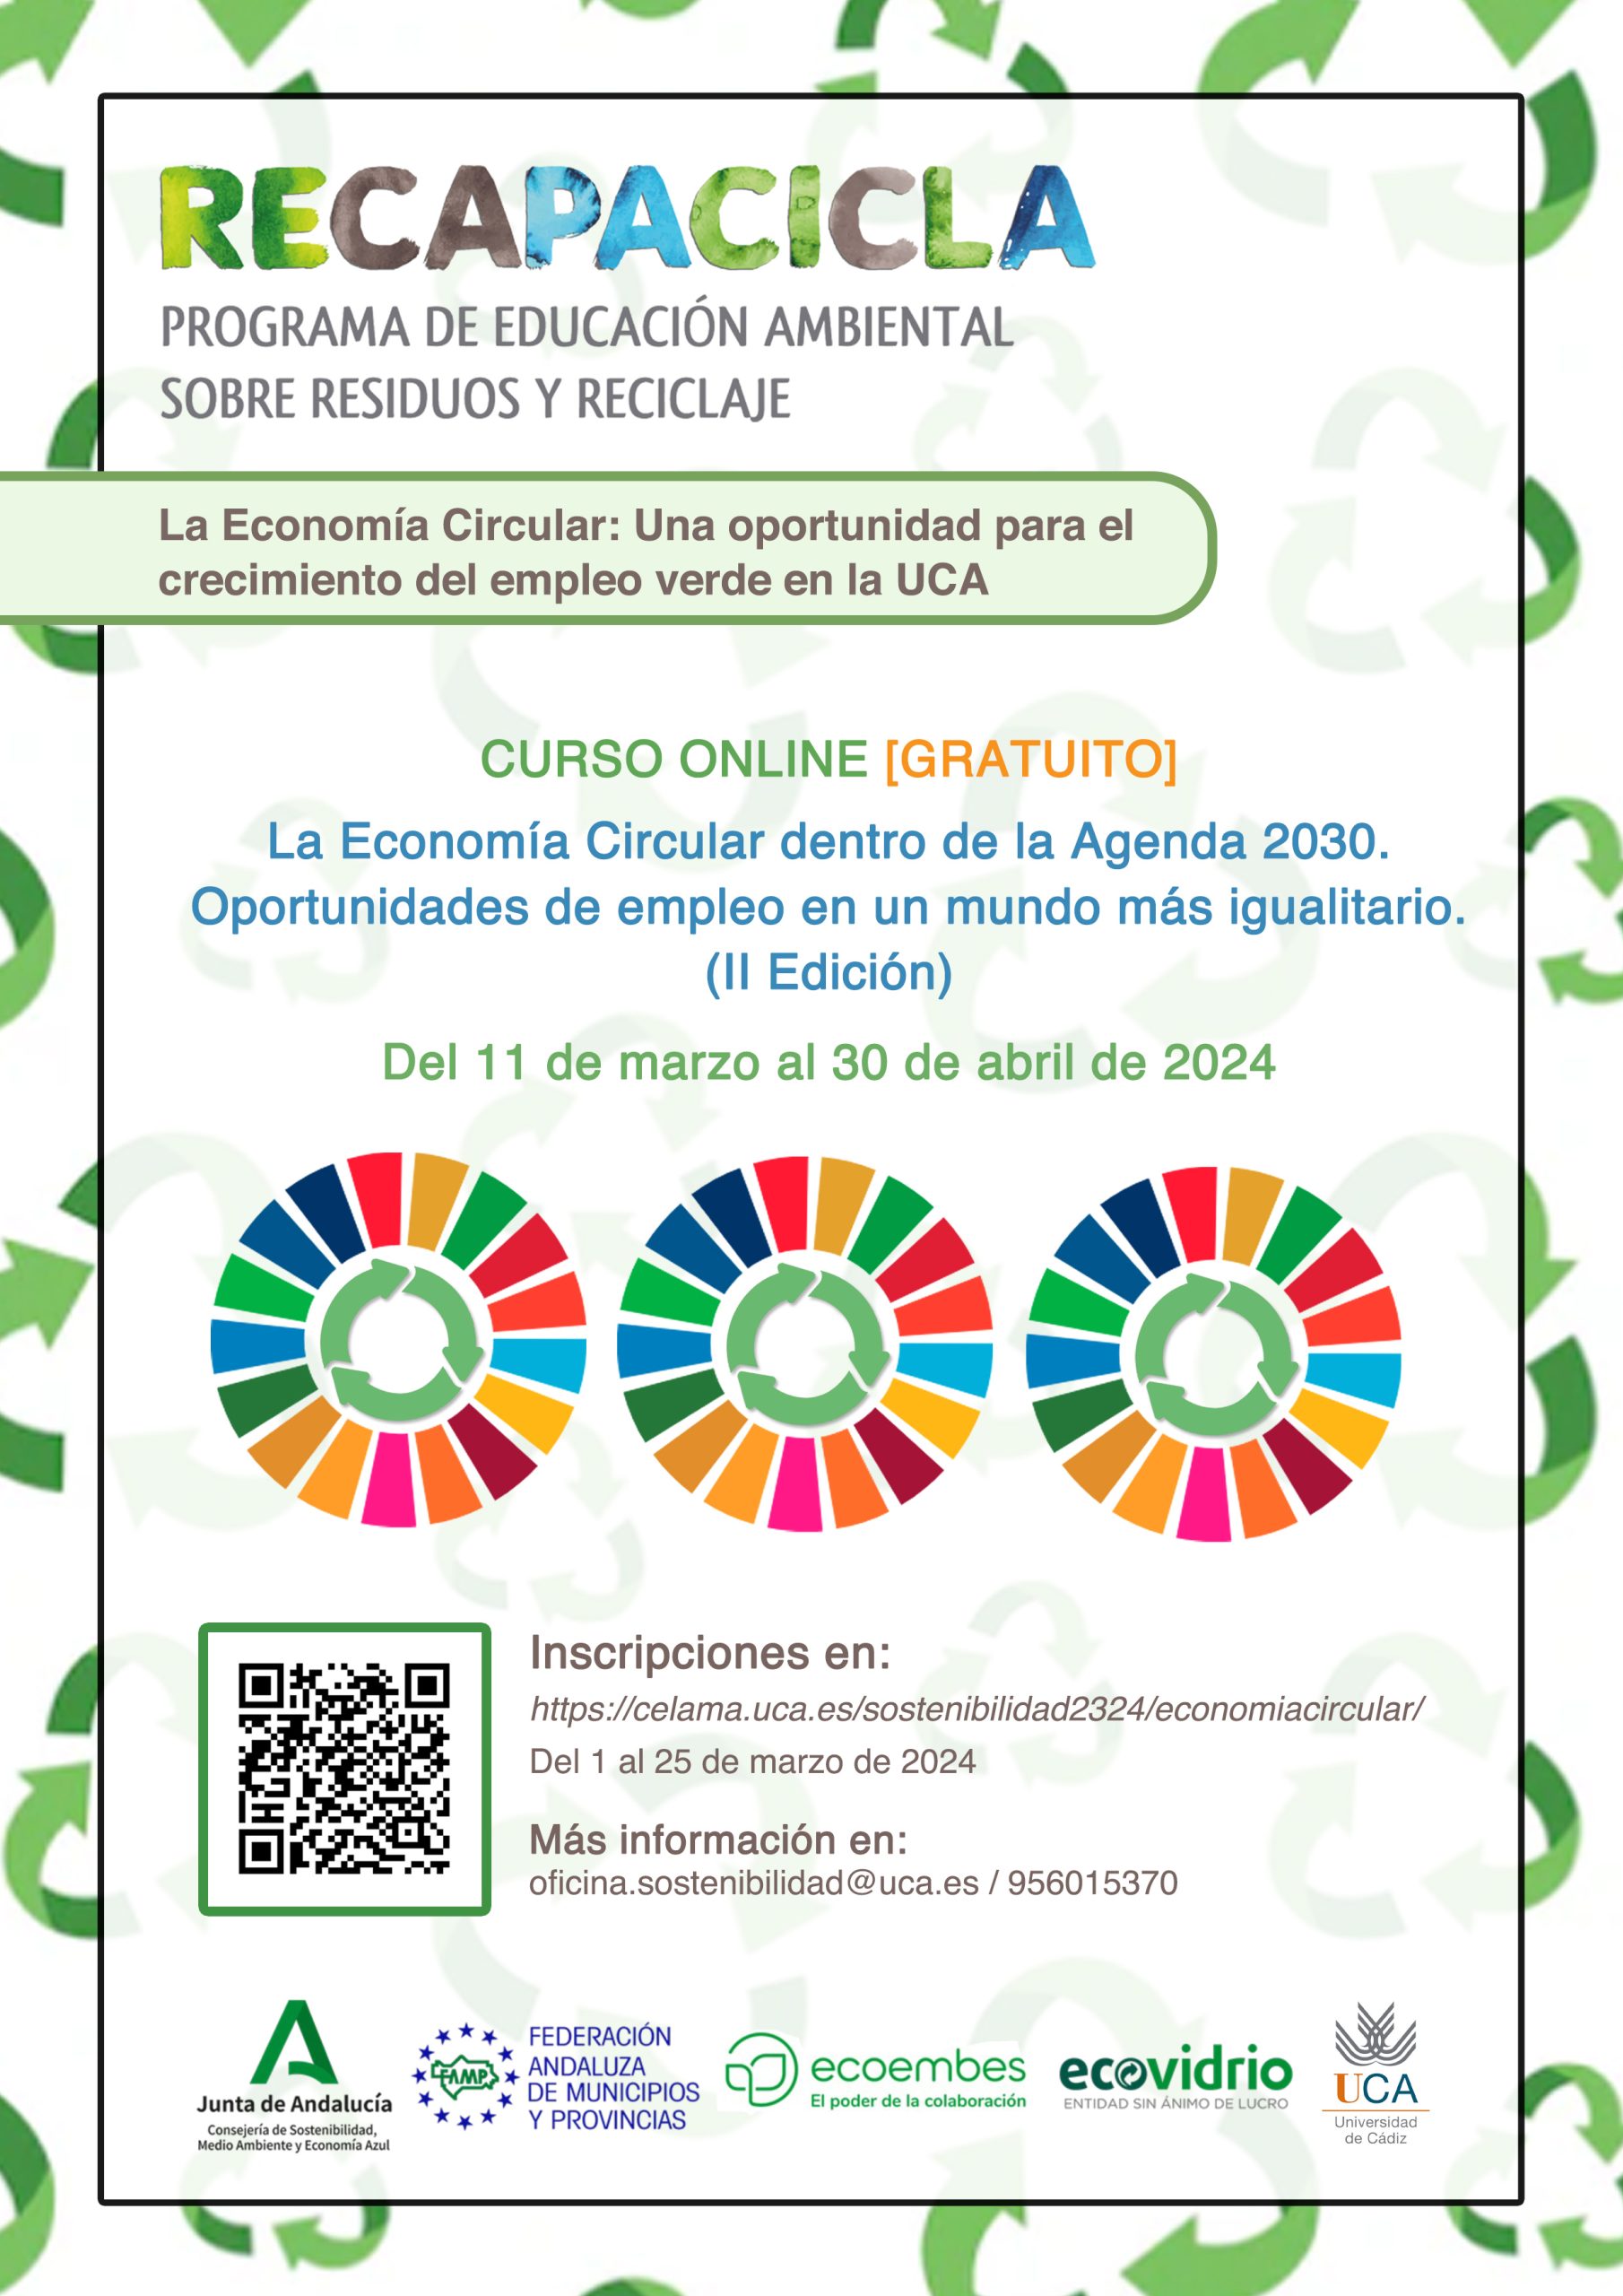 ¿Te apuntas a la II Edición del seminario online “La Economía Circular dentro de la Agenda 2030. Oportunidades de empleo en un mundo más igualitario”?